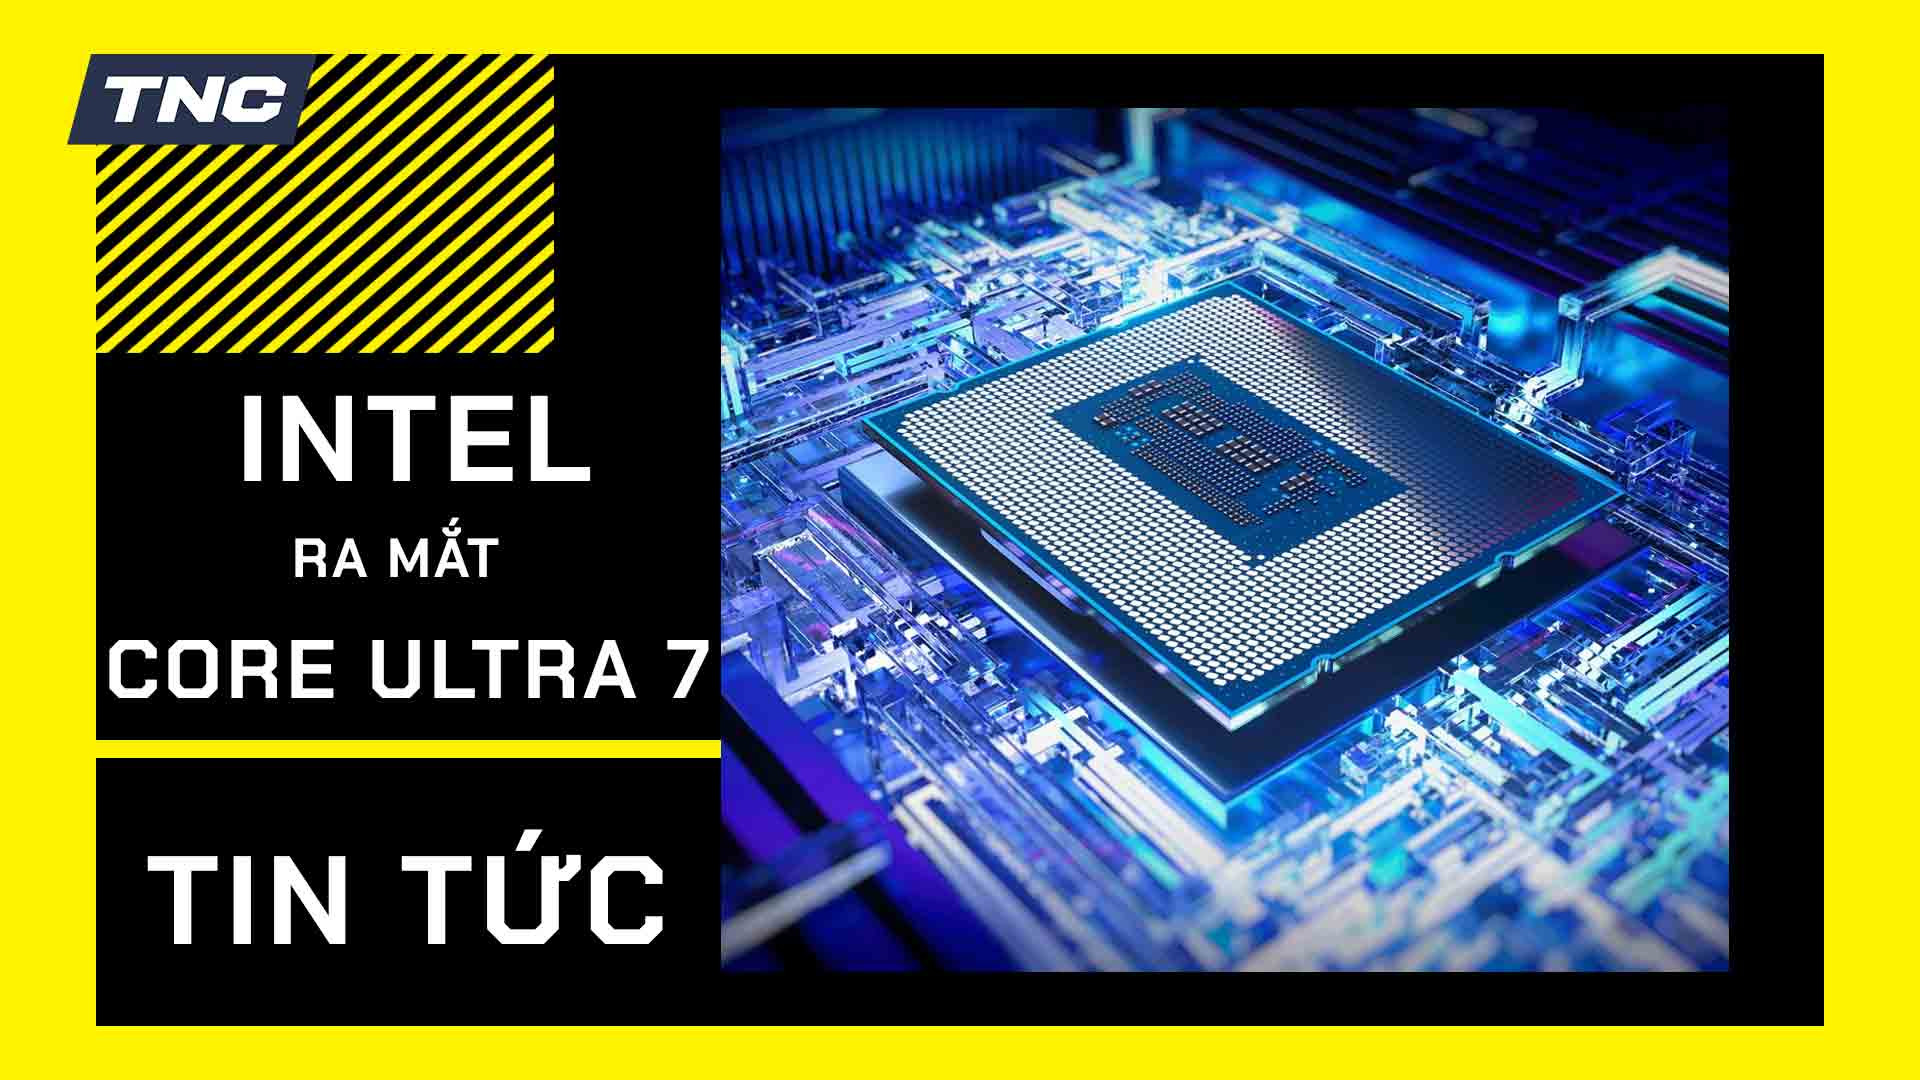 Rò rỉ CPU Intel “Core Ultra 7” mới toanh với hiệu năng không thua gì Core i7-8665U hồi… 4 năm trước